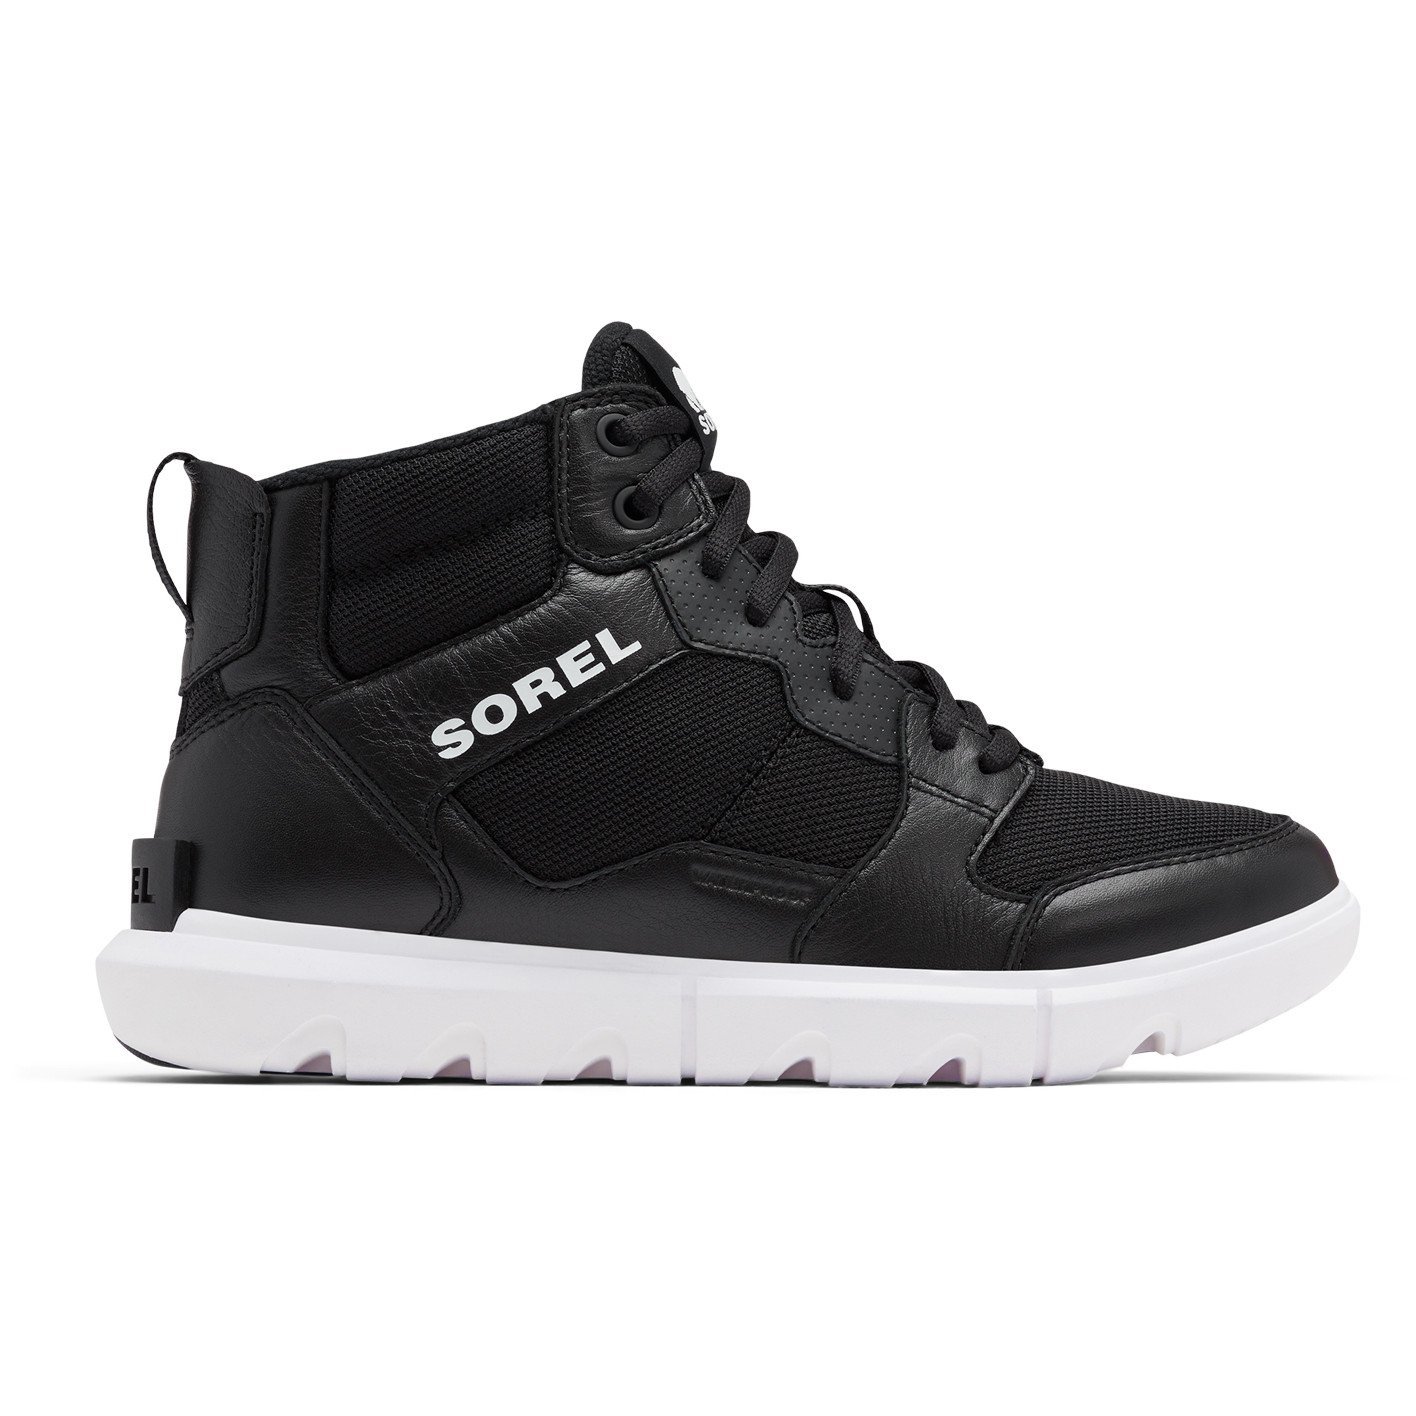 Obuv Sorel Explorer™ Sneaker Mid WP M - čierna/biela